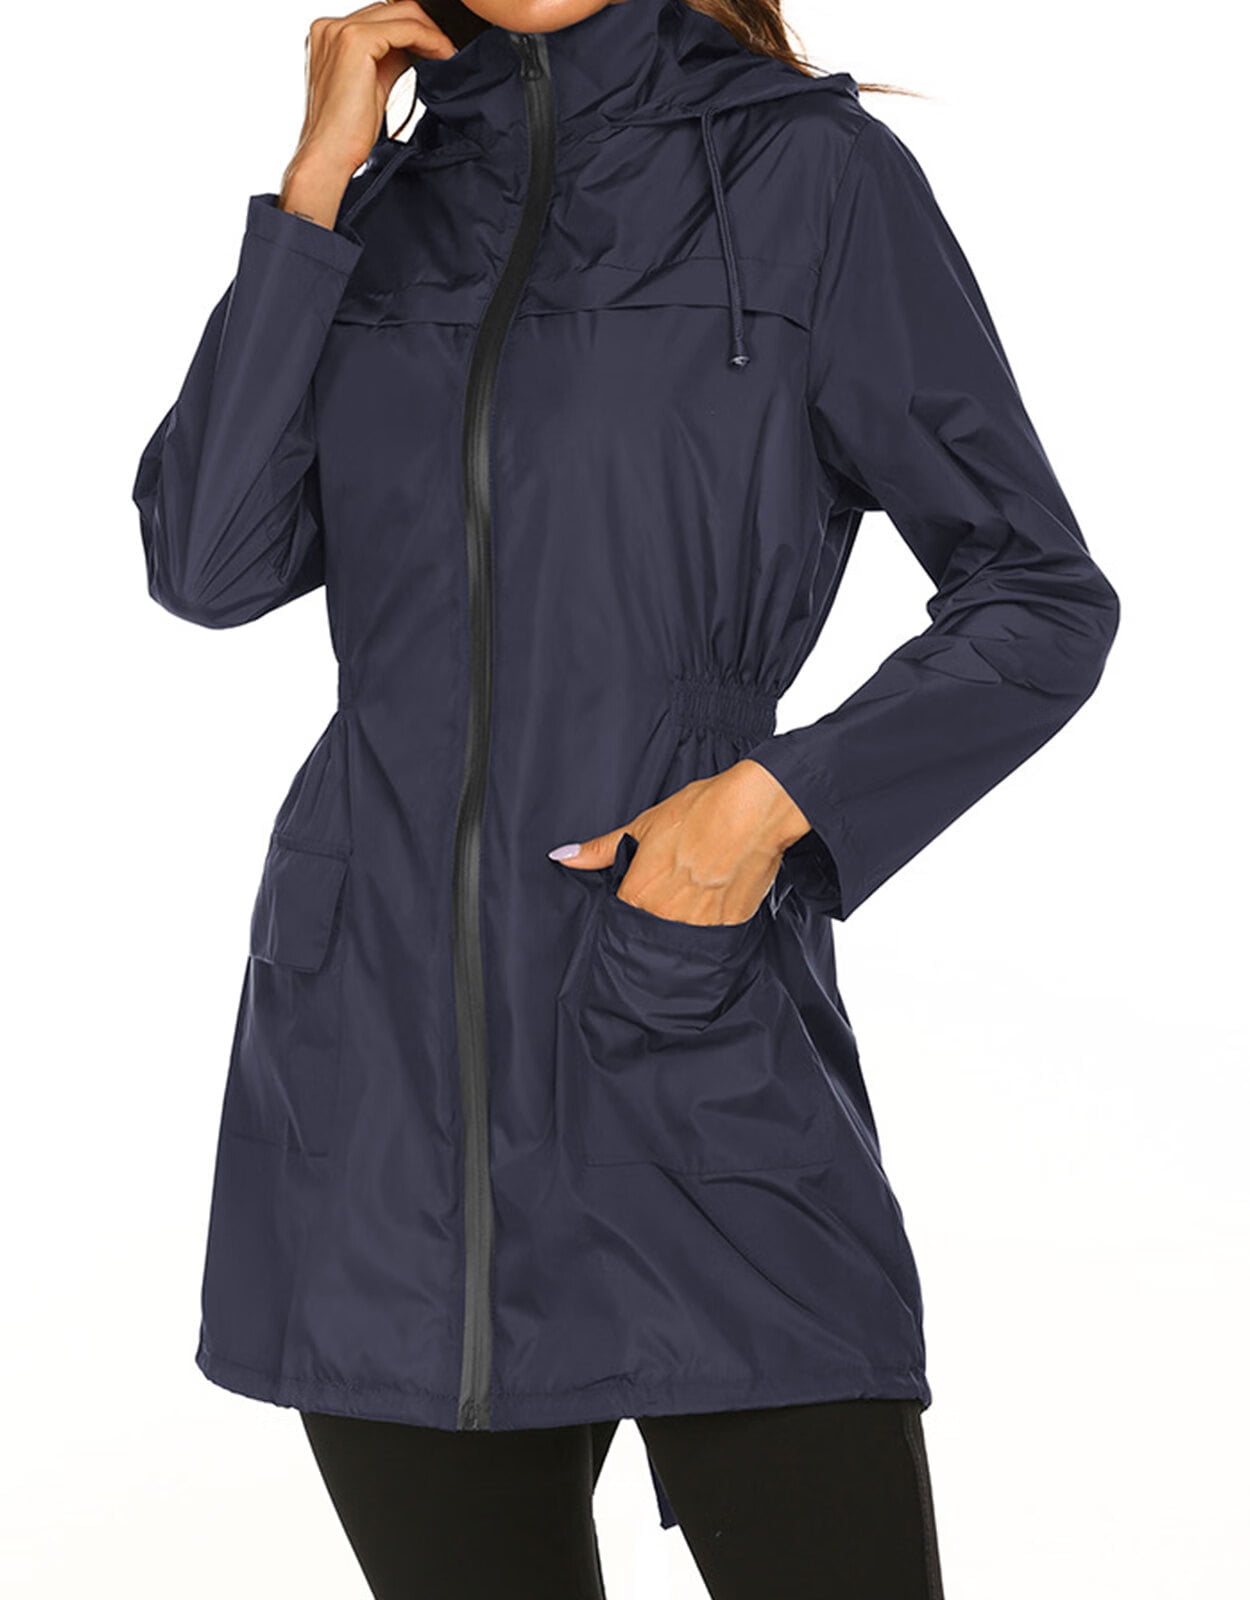 Zando Womens Waterproof Rain Jacket Women Packable Hooded Raincoat Women's Vintage Windbreaker Jacket Lightweight Anorak 